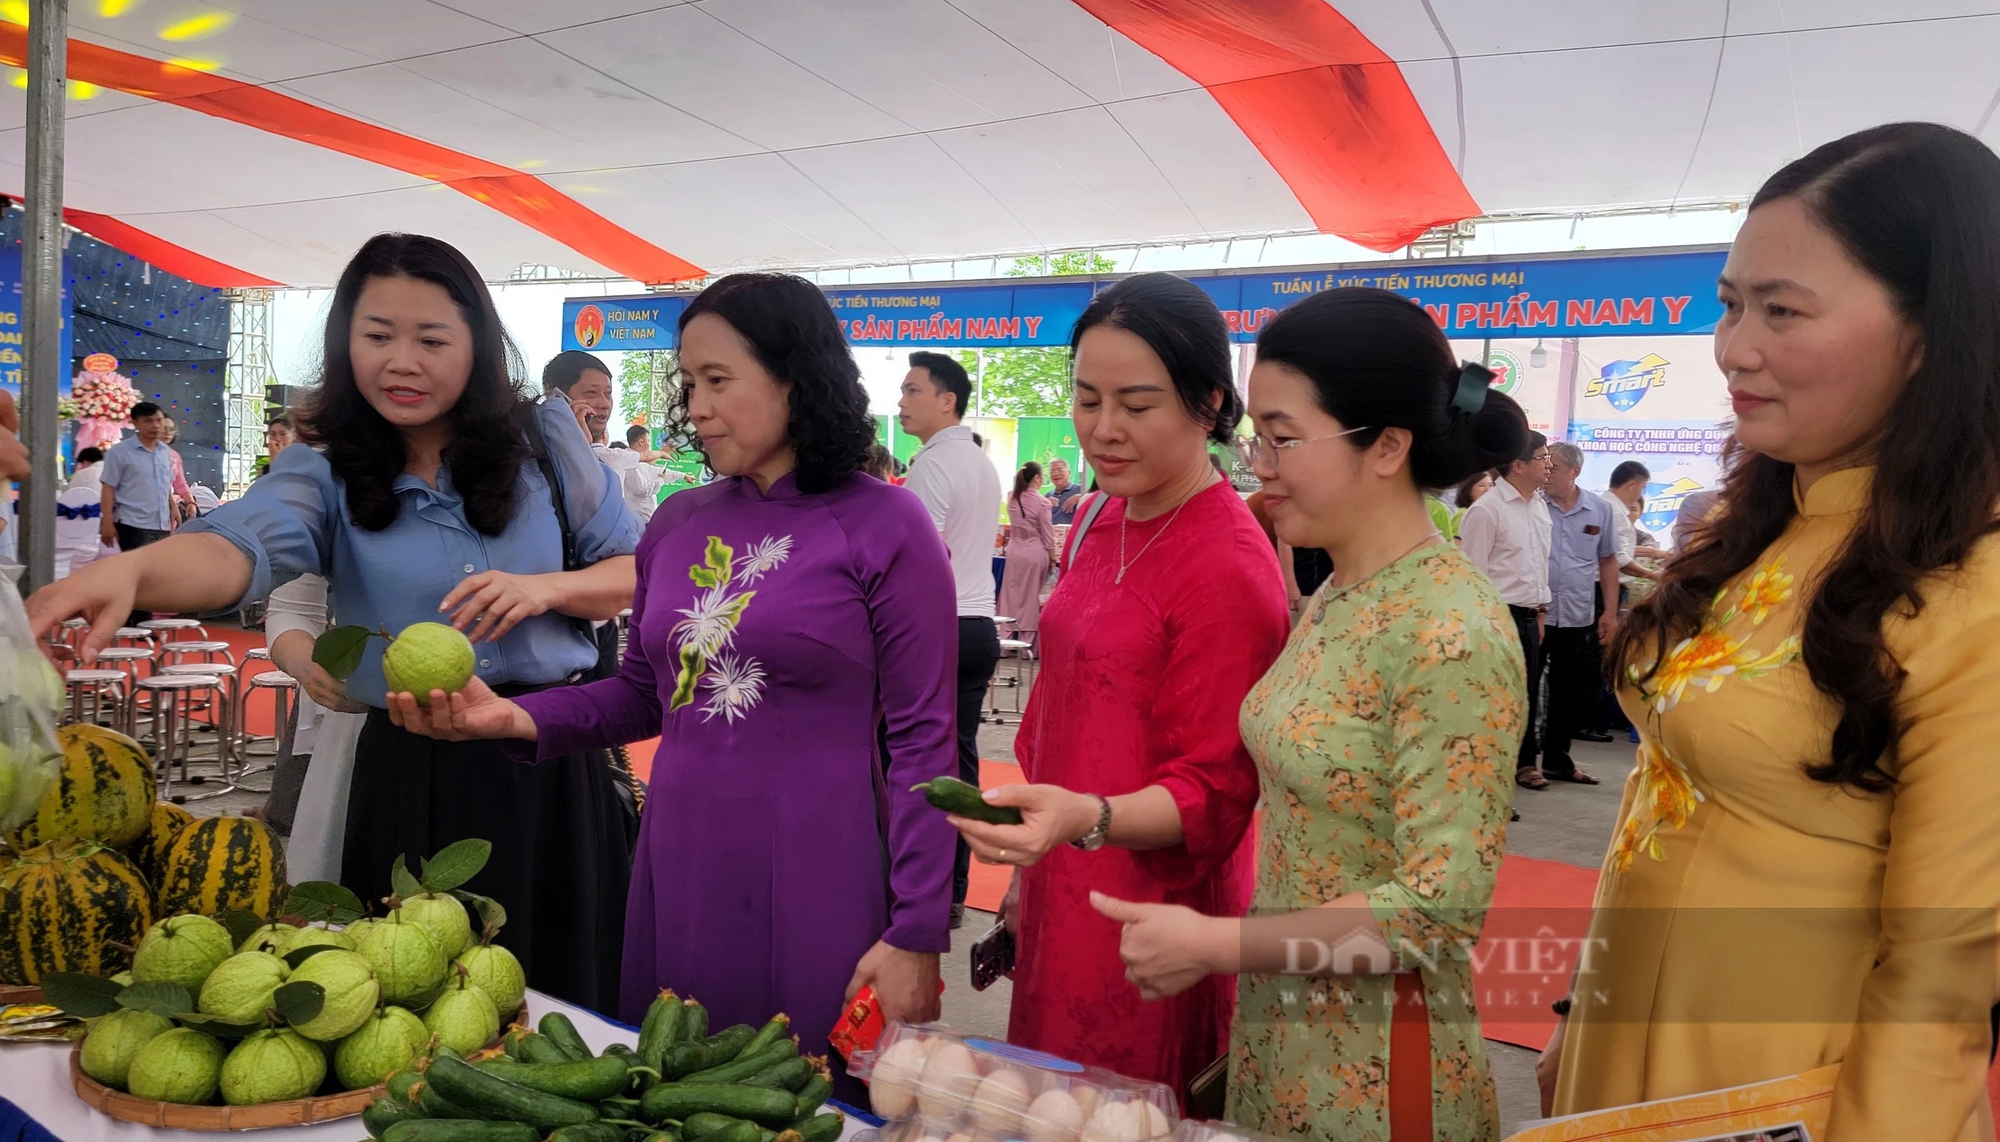 Hải Dương: Nông sản OCOP huyện Cẩm Giàng đang trưng bày giới thiệu tại lễ hội đền Bia- Ảnh 4.